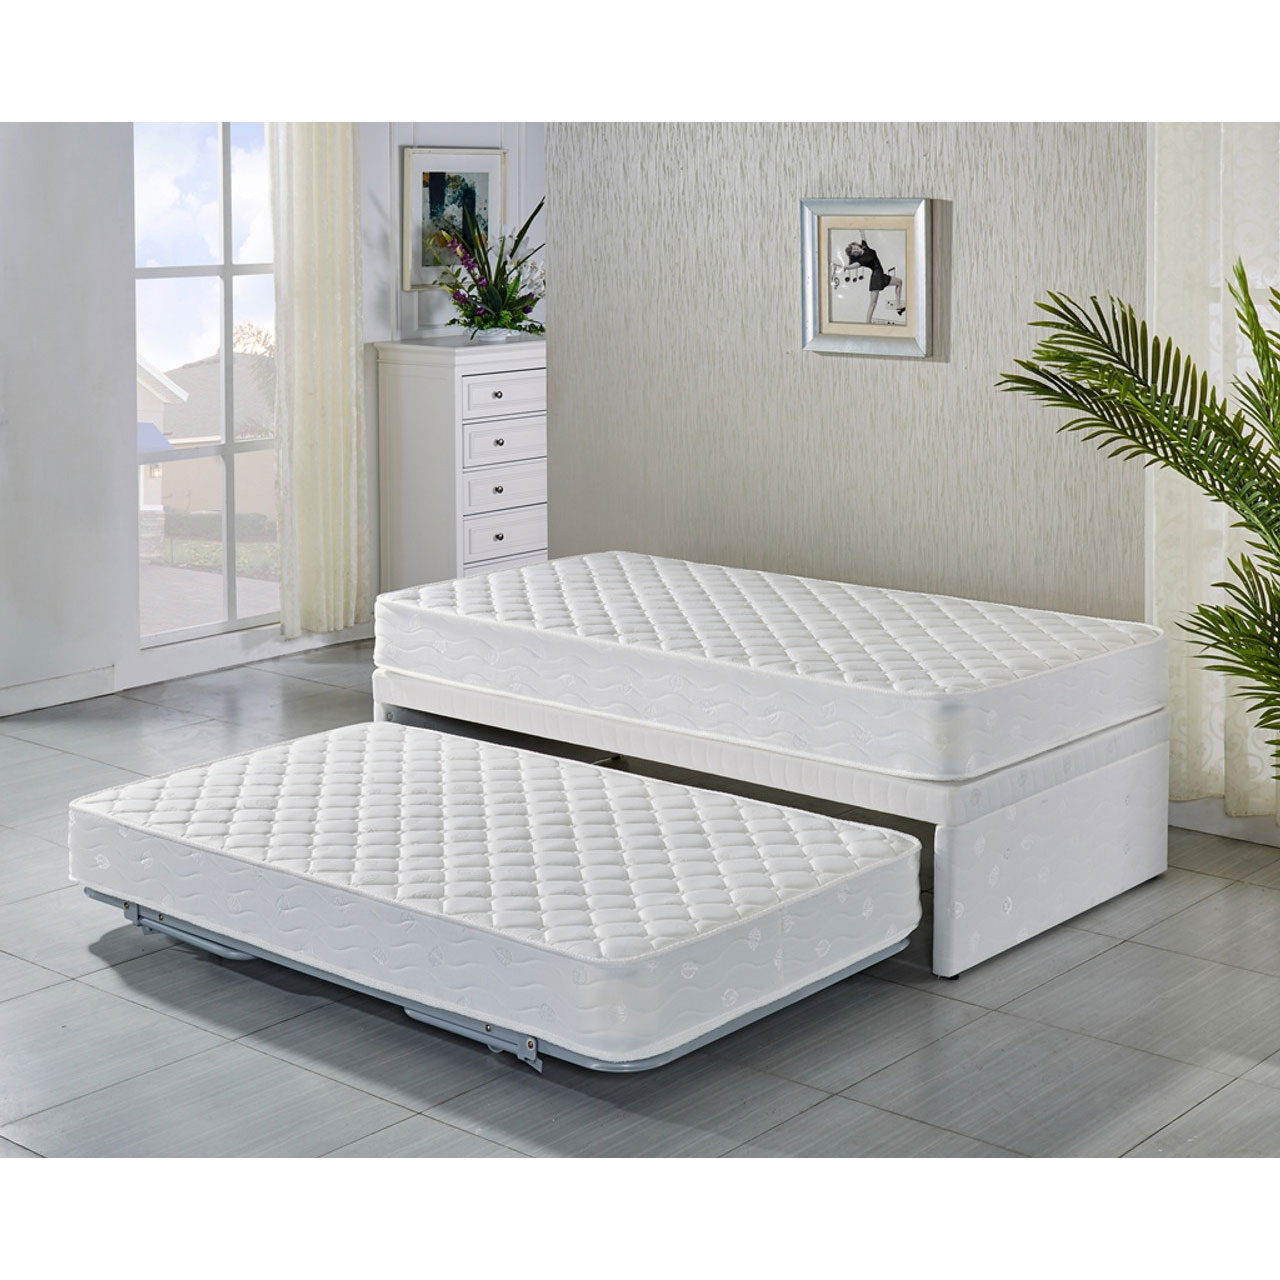 Мягкая выдвижные кровати. Кровать Ивиса 2-82 с выдвижным спальным. Кровать Твин бед. Кровать с выдвижной кроватью.